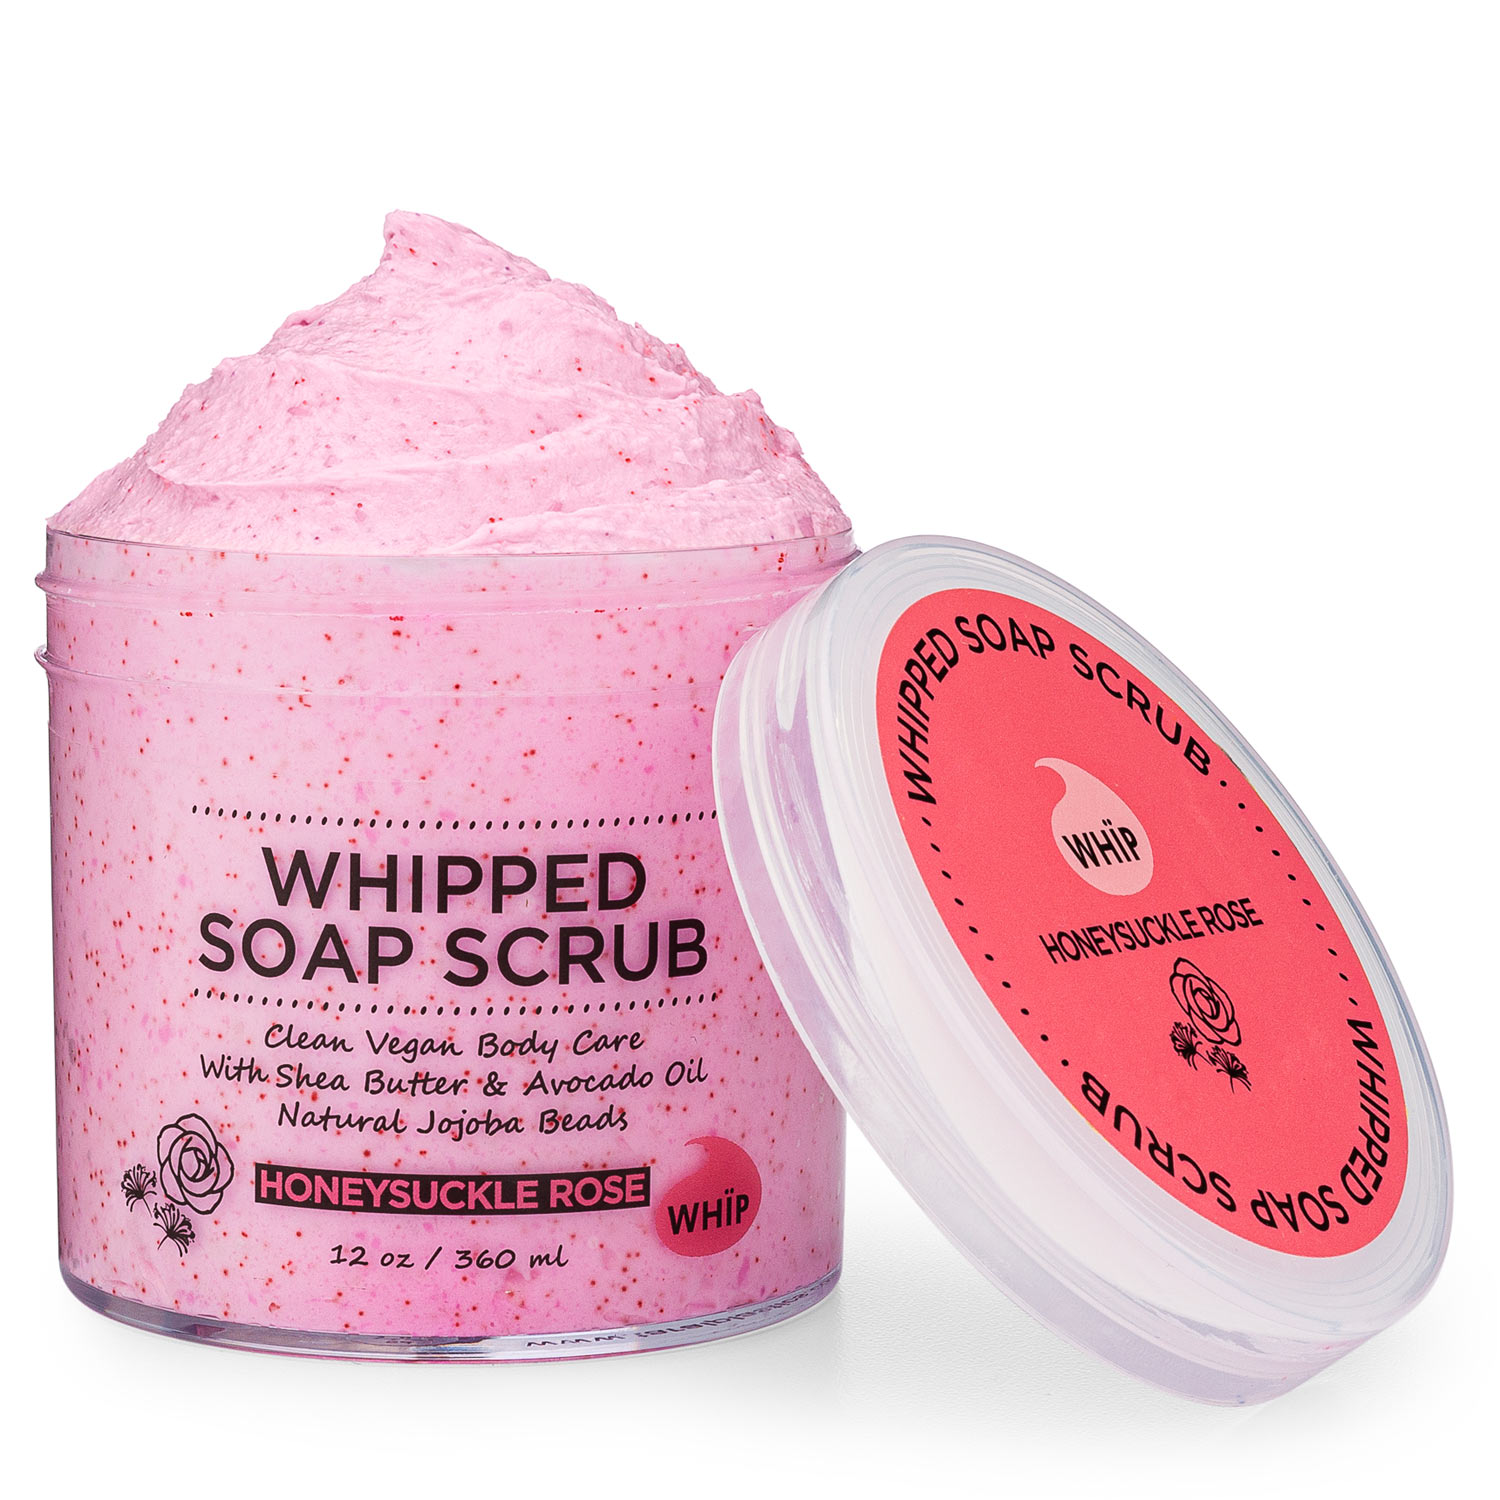 Whipped Soap Scrub - Honeysuckle Rose WHÏP Image